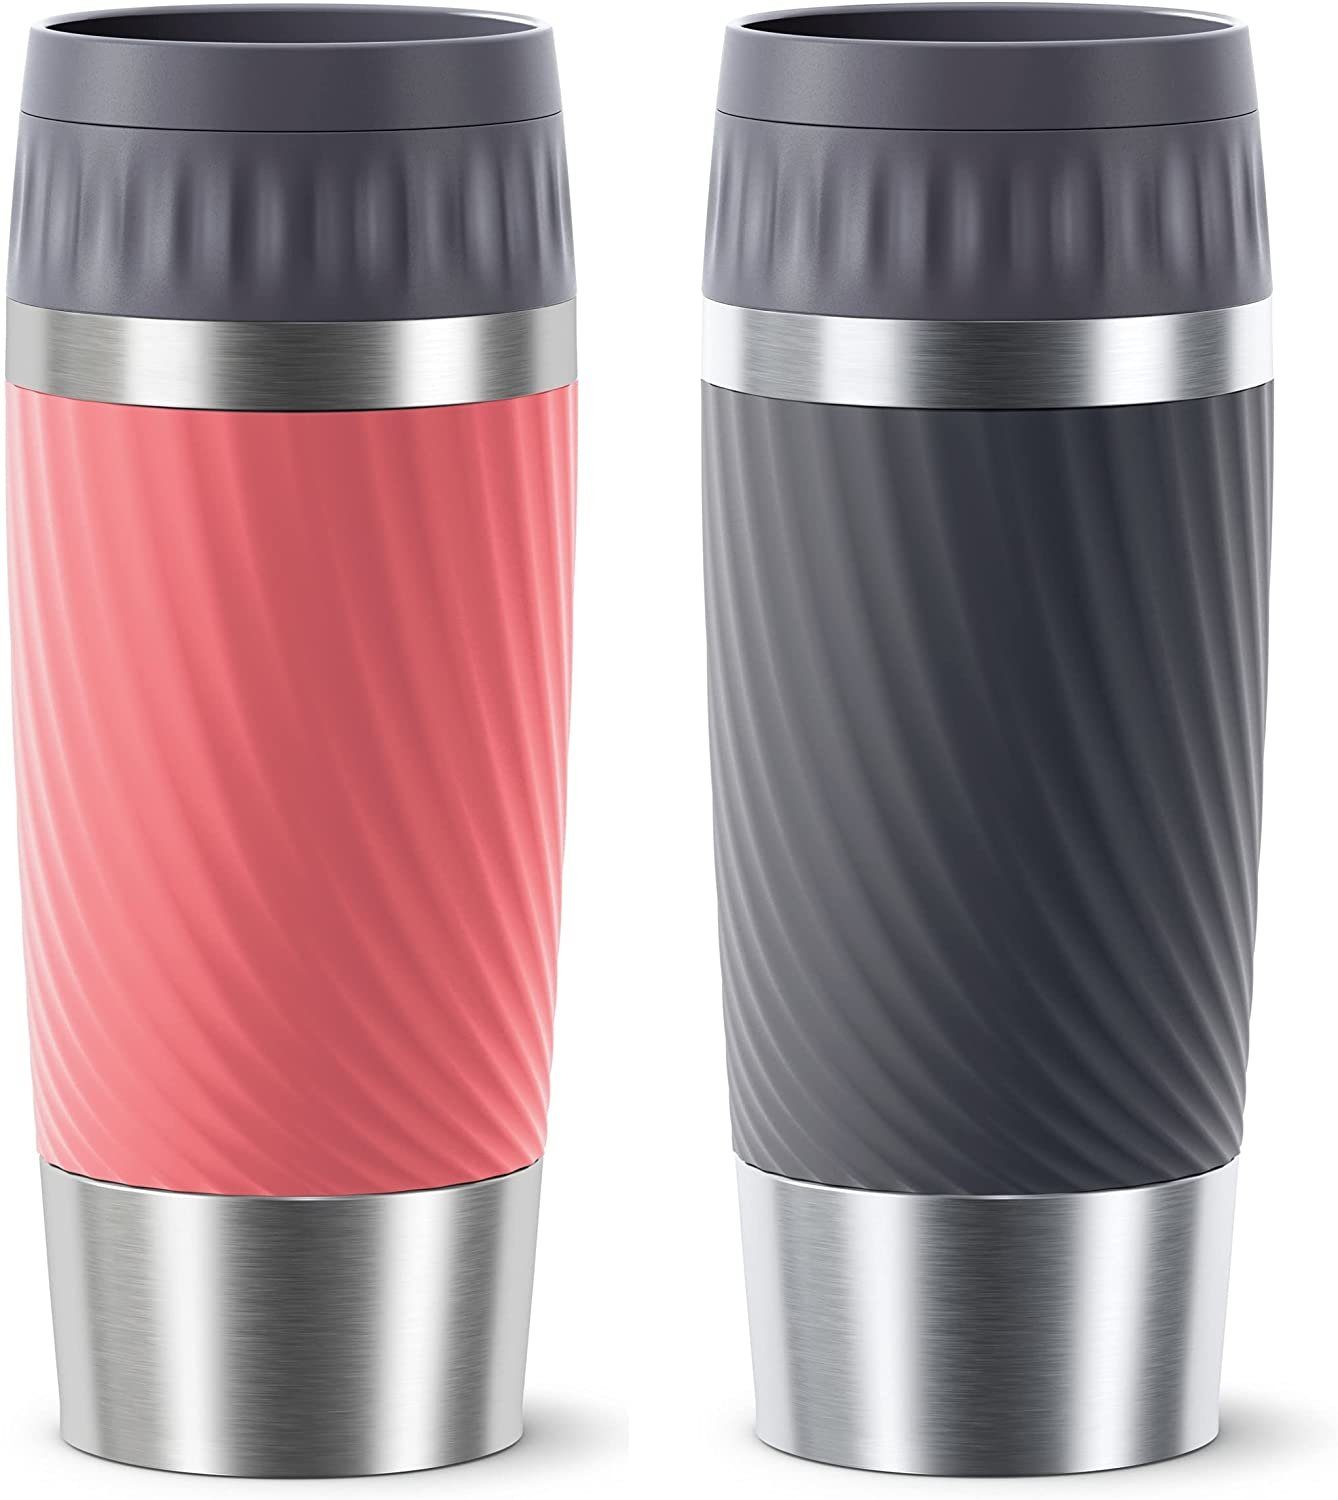 Emsa Thermoflasche Travel Mug, Emsa Thermobecher 2-teilig, 360 ml Travel Mug,  Für unterwegs, Luft und Wasserdicht (Isolierbecher mit doppelwandigem  Edelstahlkörper, BPA frei, Spülmaschinenfest), auslaufsicher, Rot und  Anthrazit